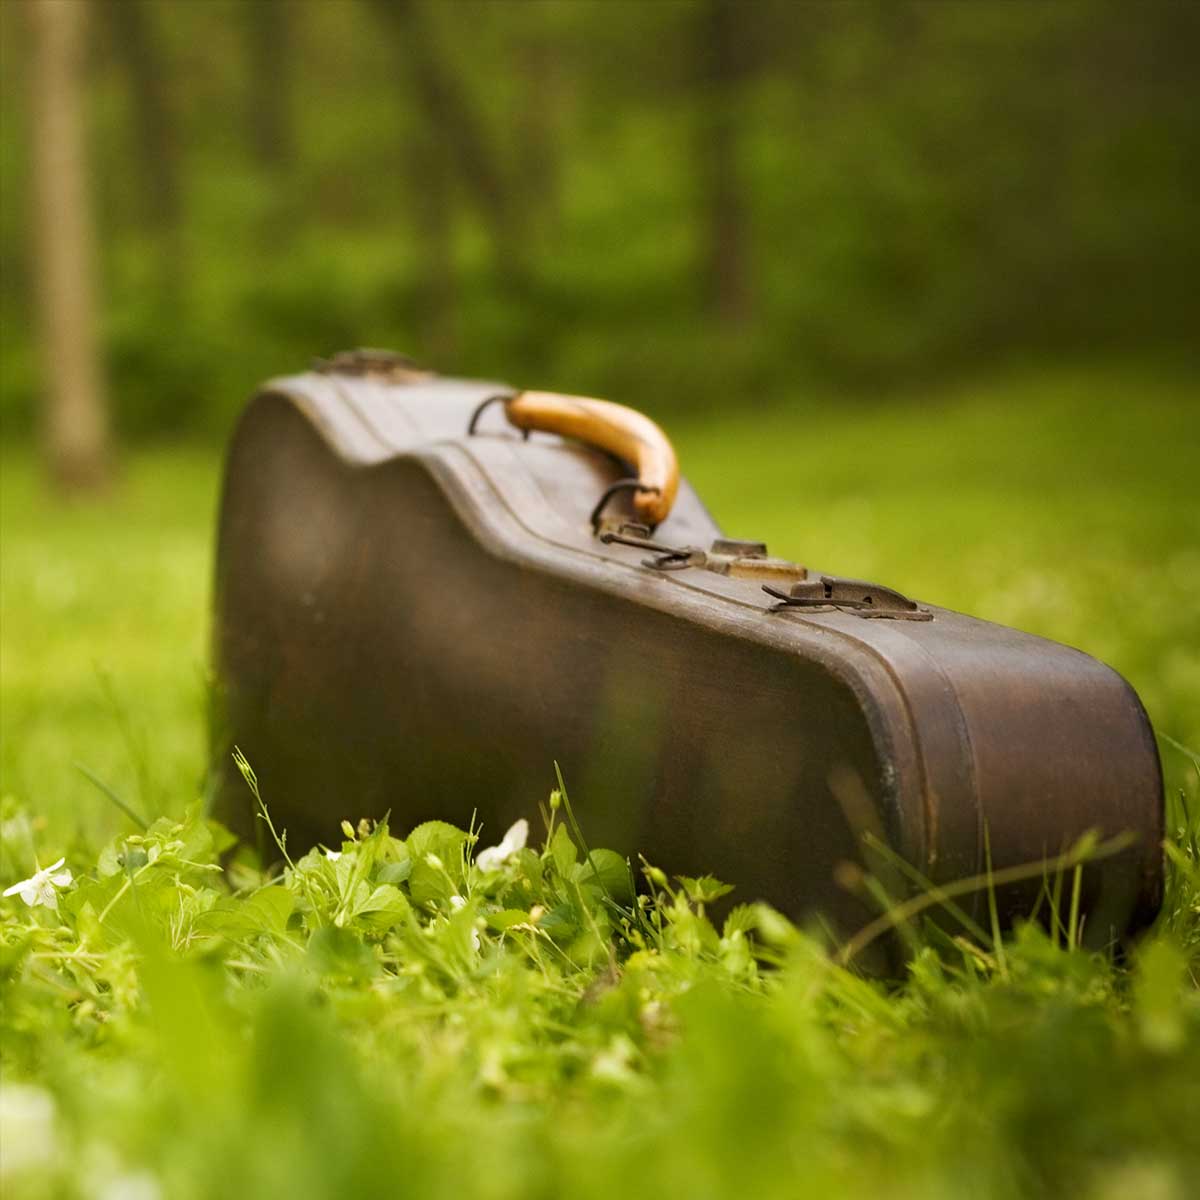 Instrument case in grass